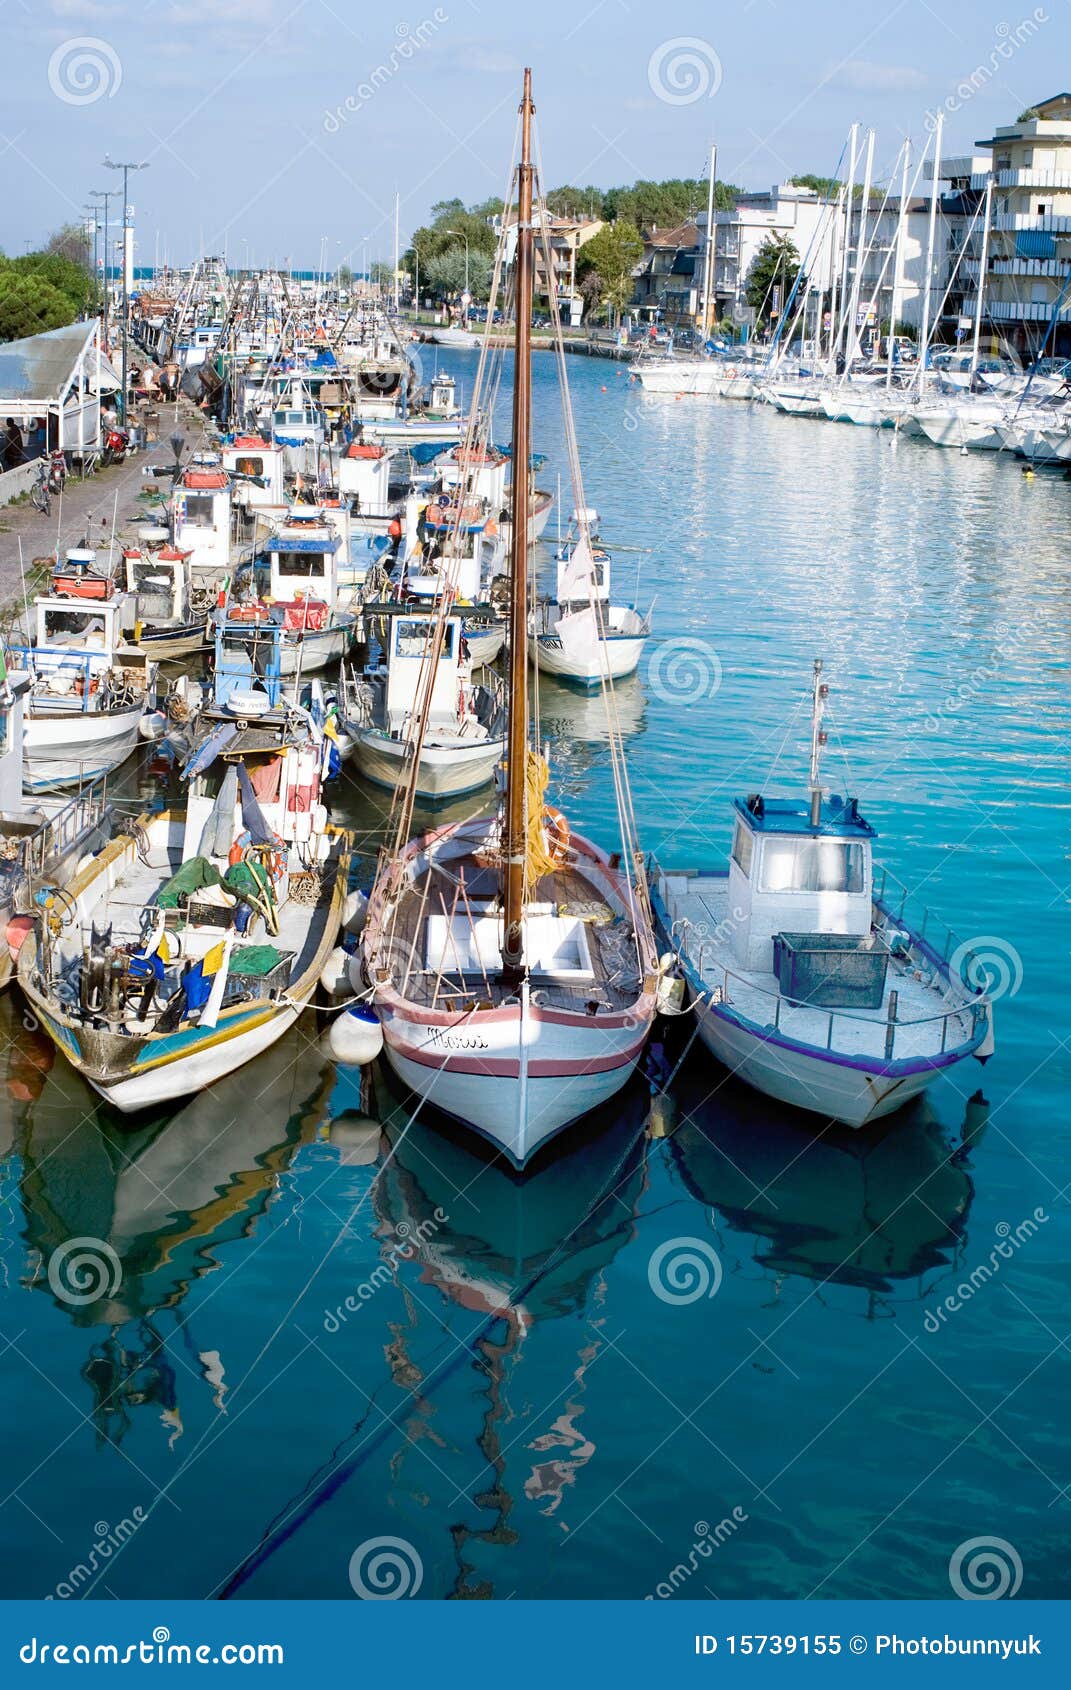 docked boats in rimini